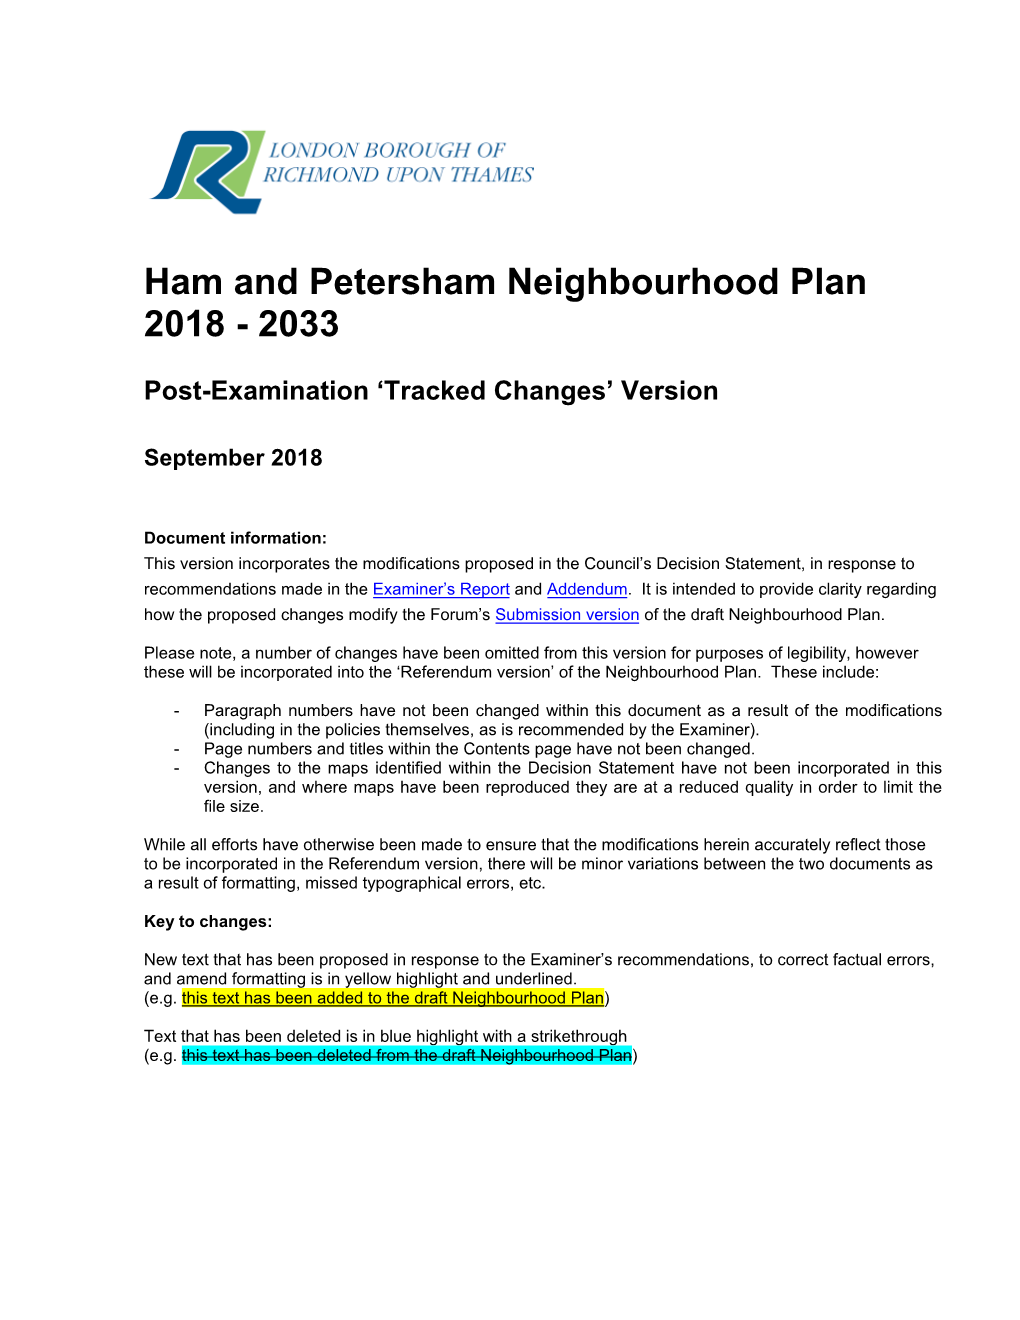 Ham and Petersham Neighbourhood Plan 2018 - 2033